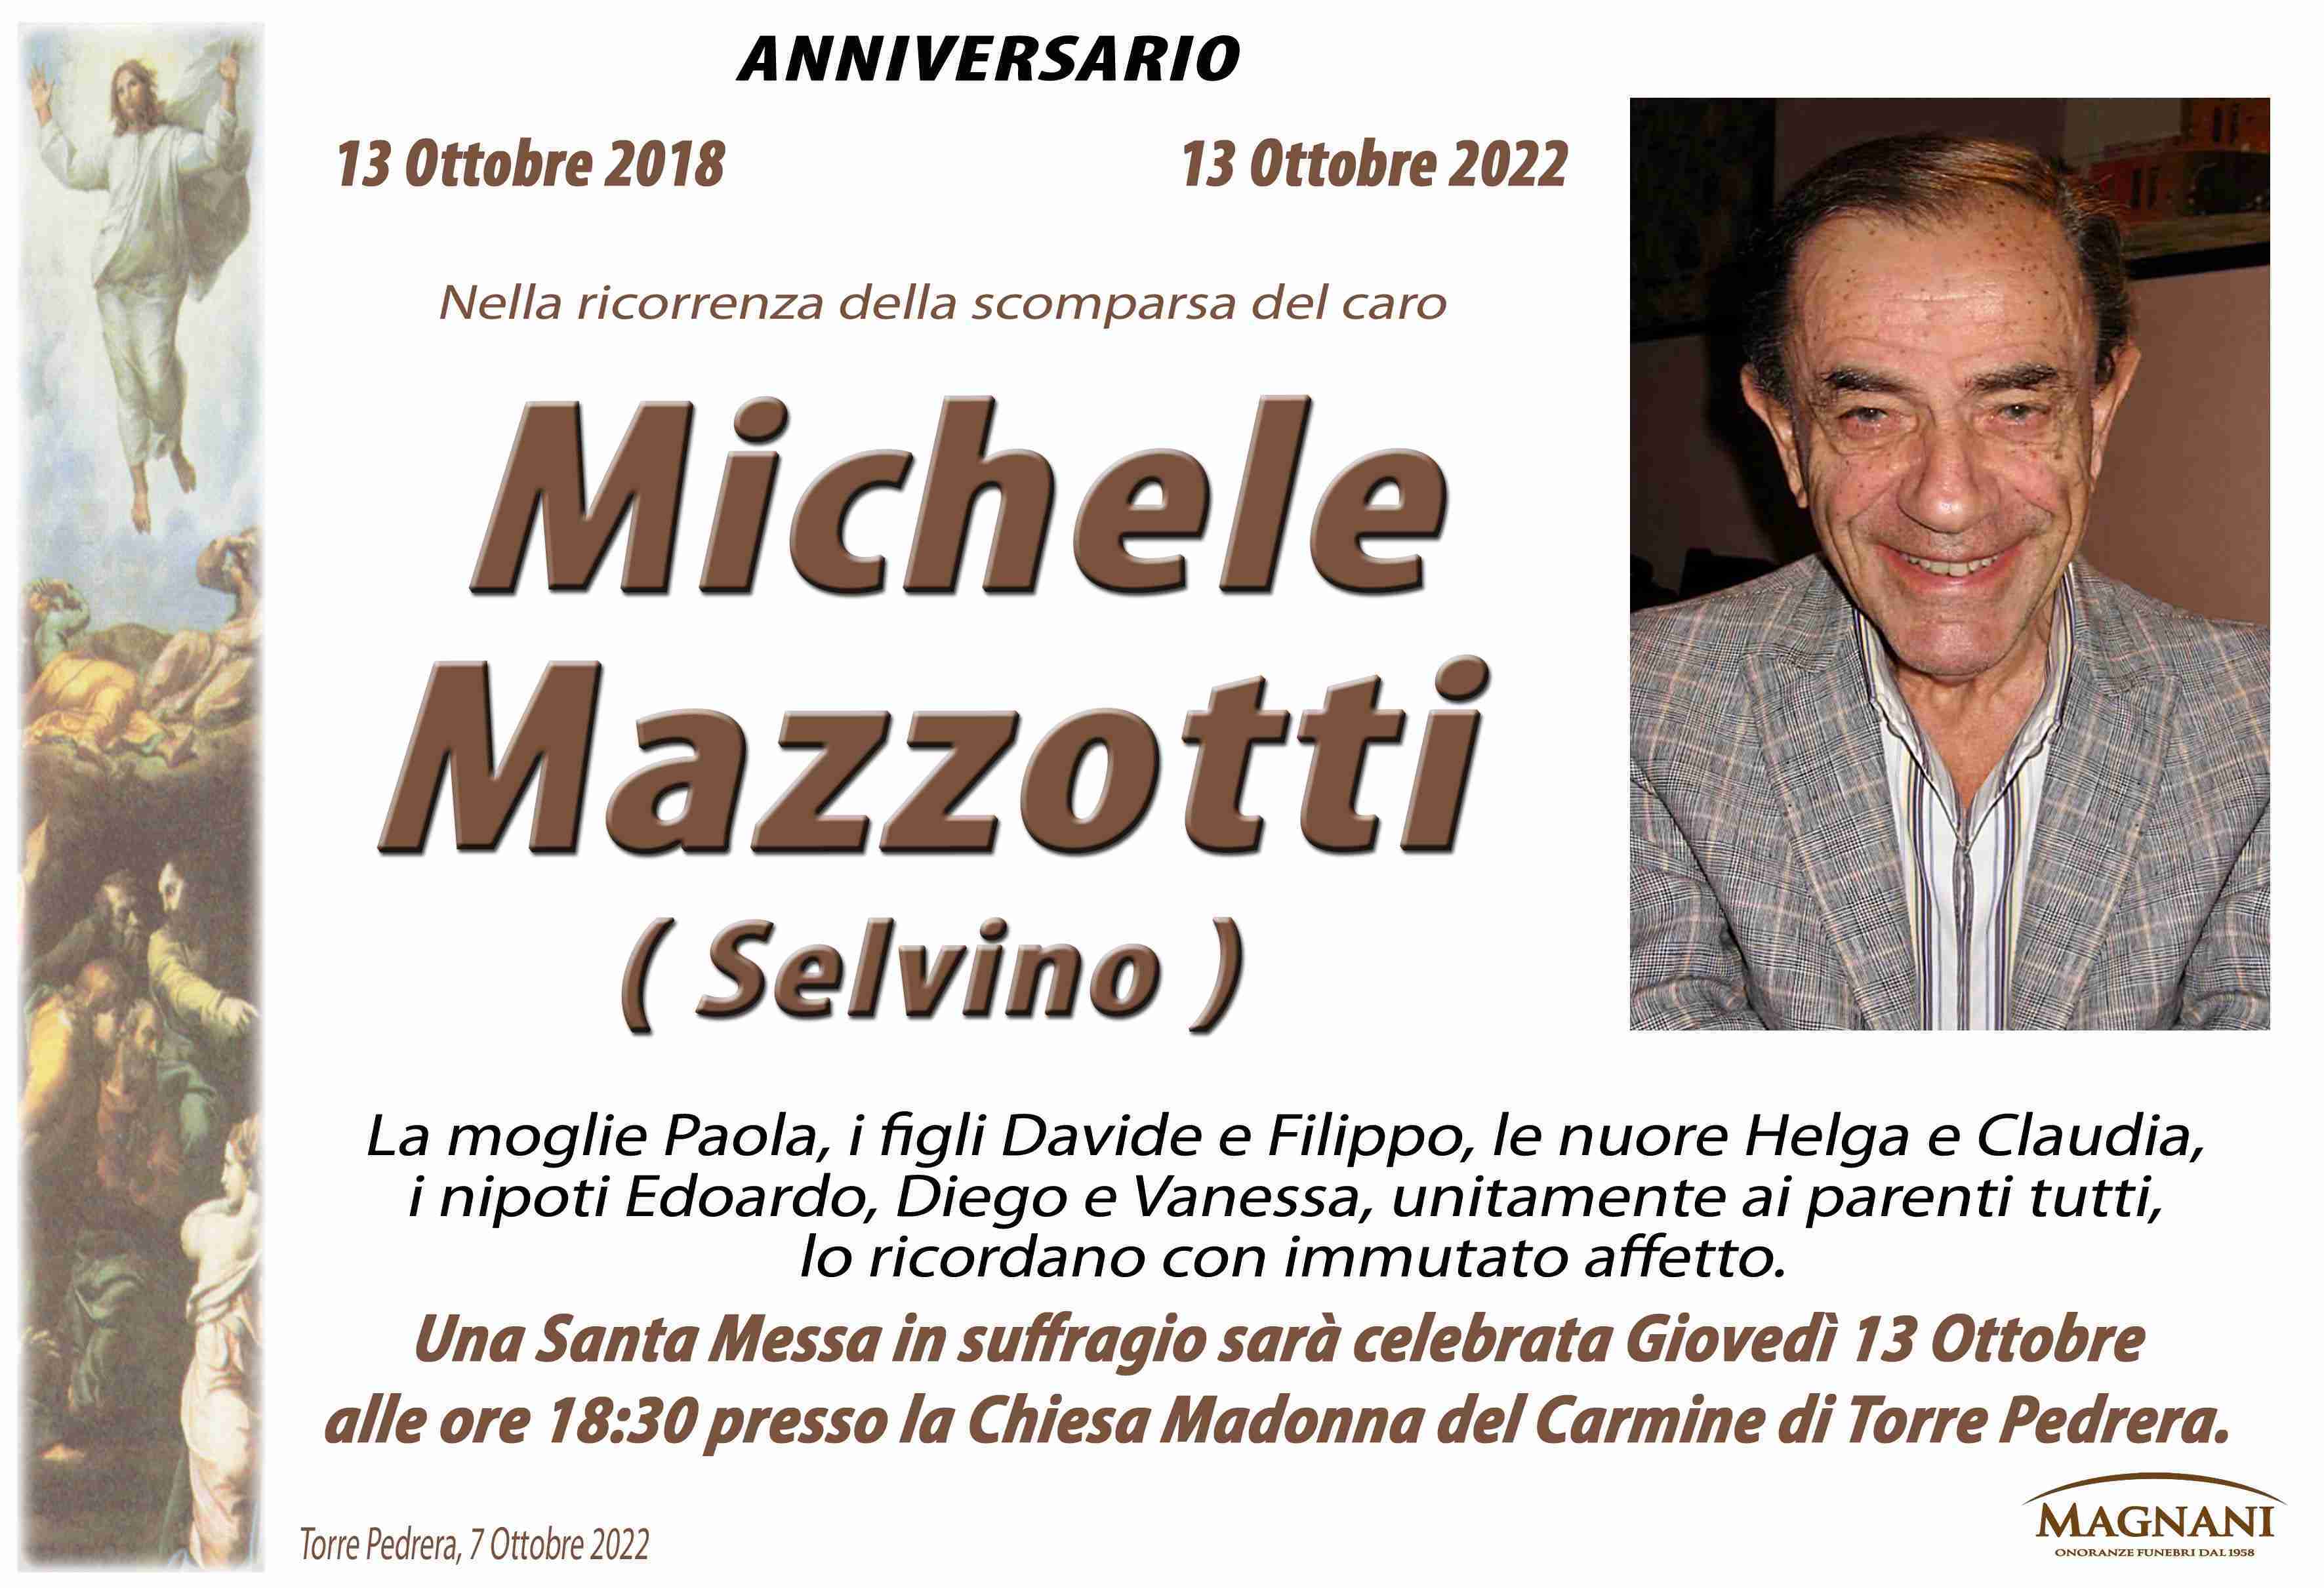 Michele Mazzotti ( Selvino )